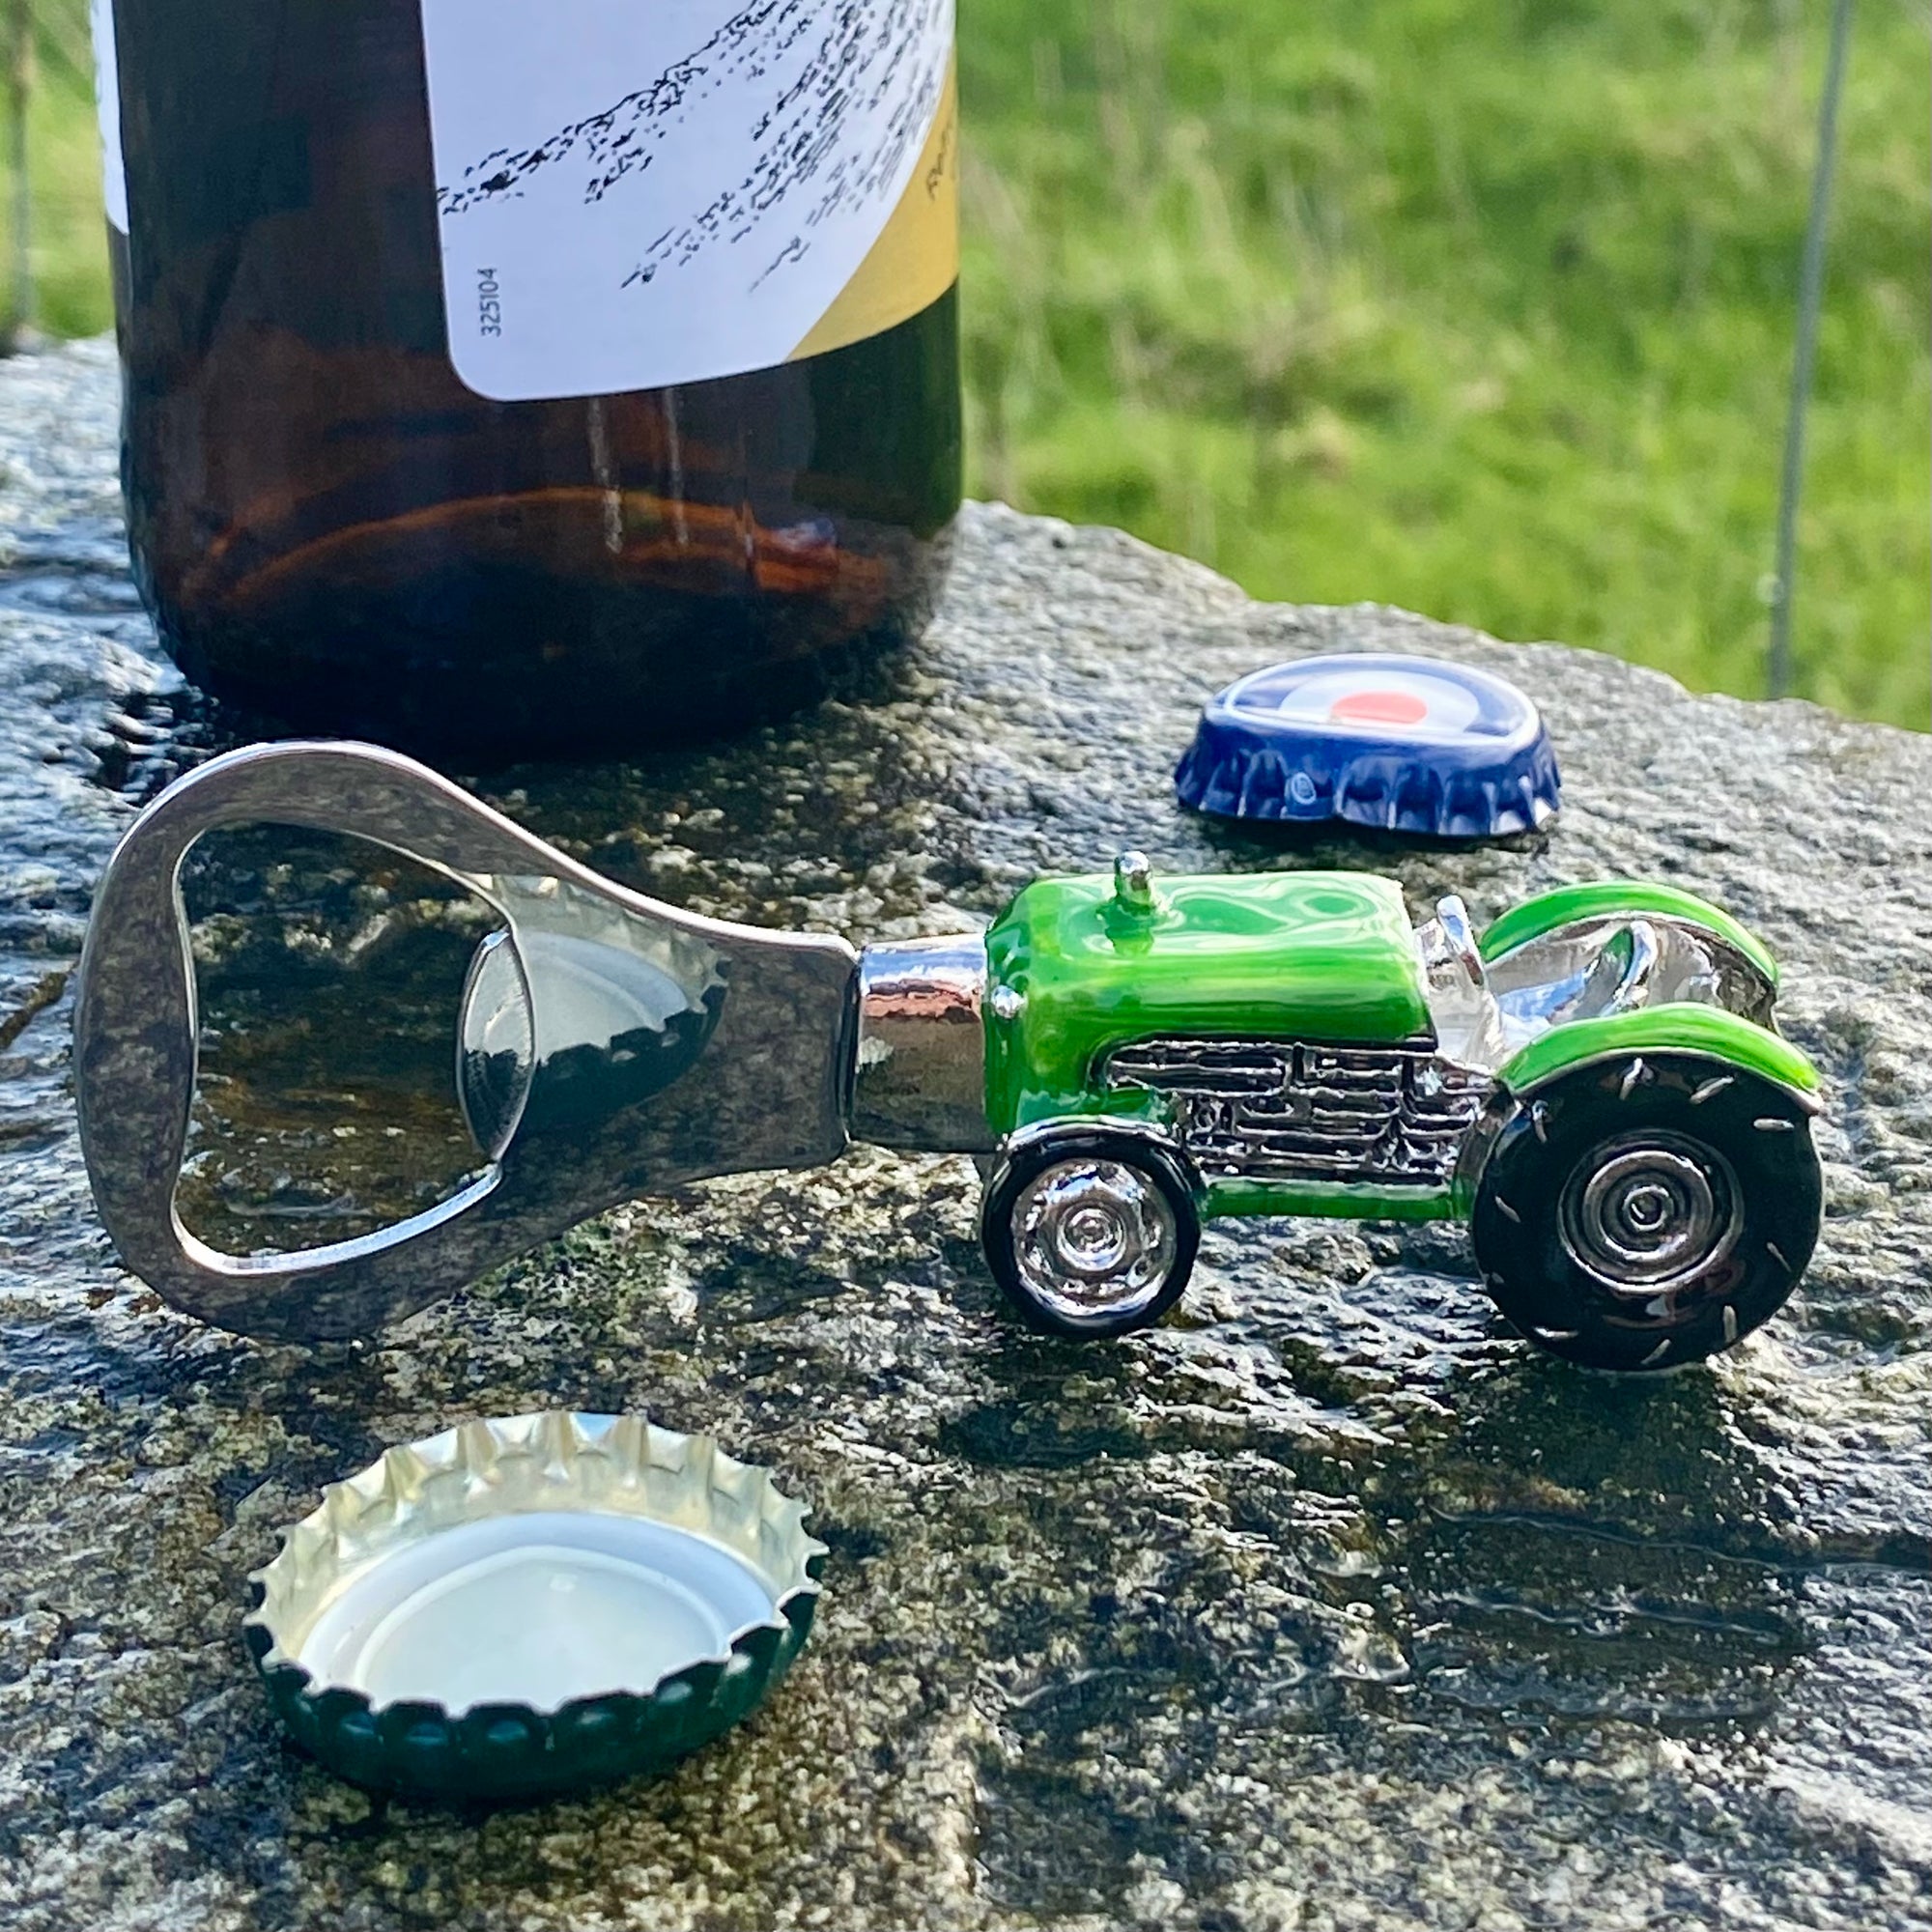 Green Tractor Bottle Opener